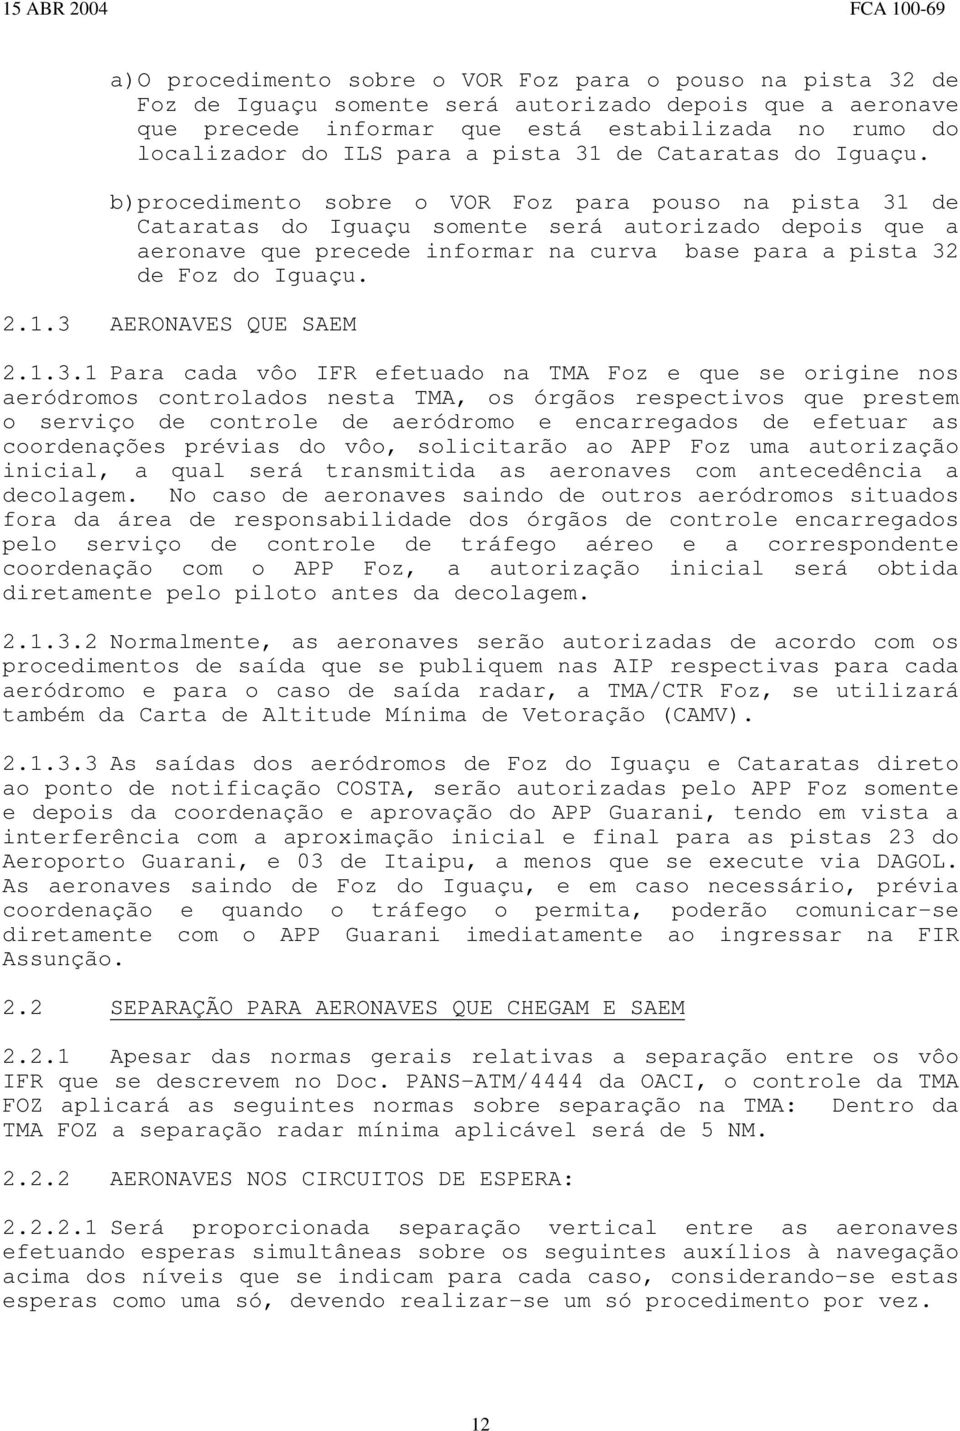 b)procedimento sobre o VOR Foz para pouso na pista 31 de Cataratas do Iguaçu somente será autorizado depois que a aeronave que precede informar na curva base para a pista 32 de Foz do Iguaçu. 2.1.3 AERONAVES QUE SAEM 2.